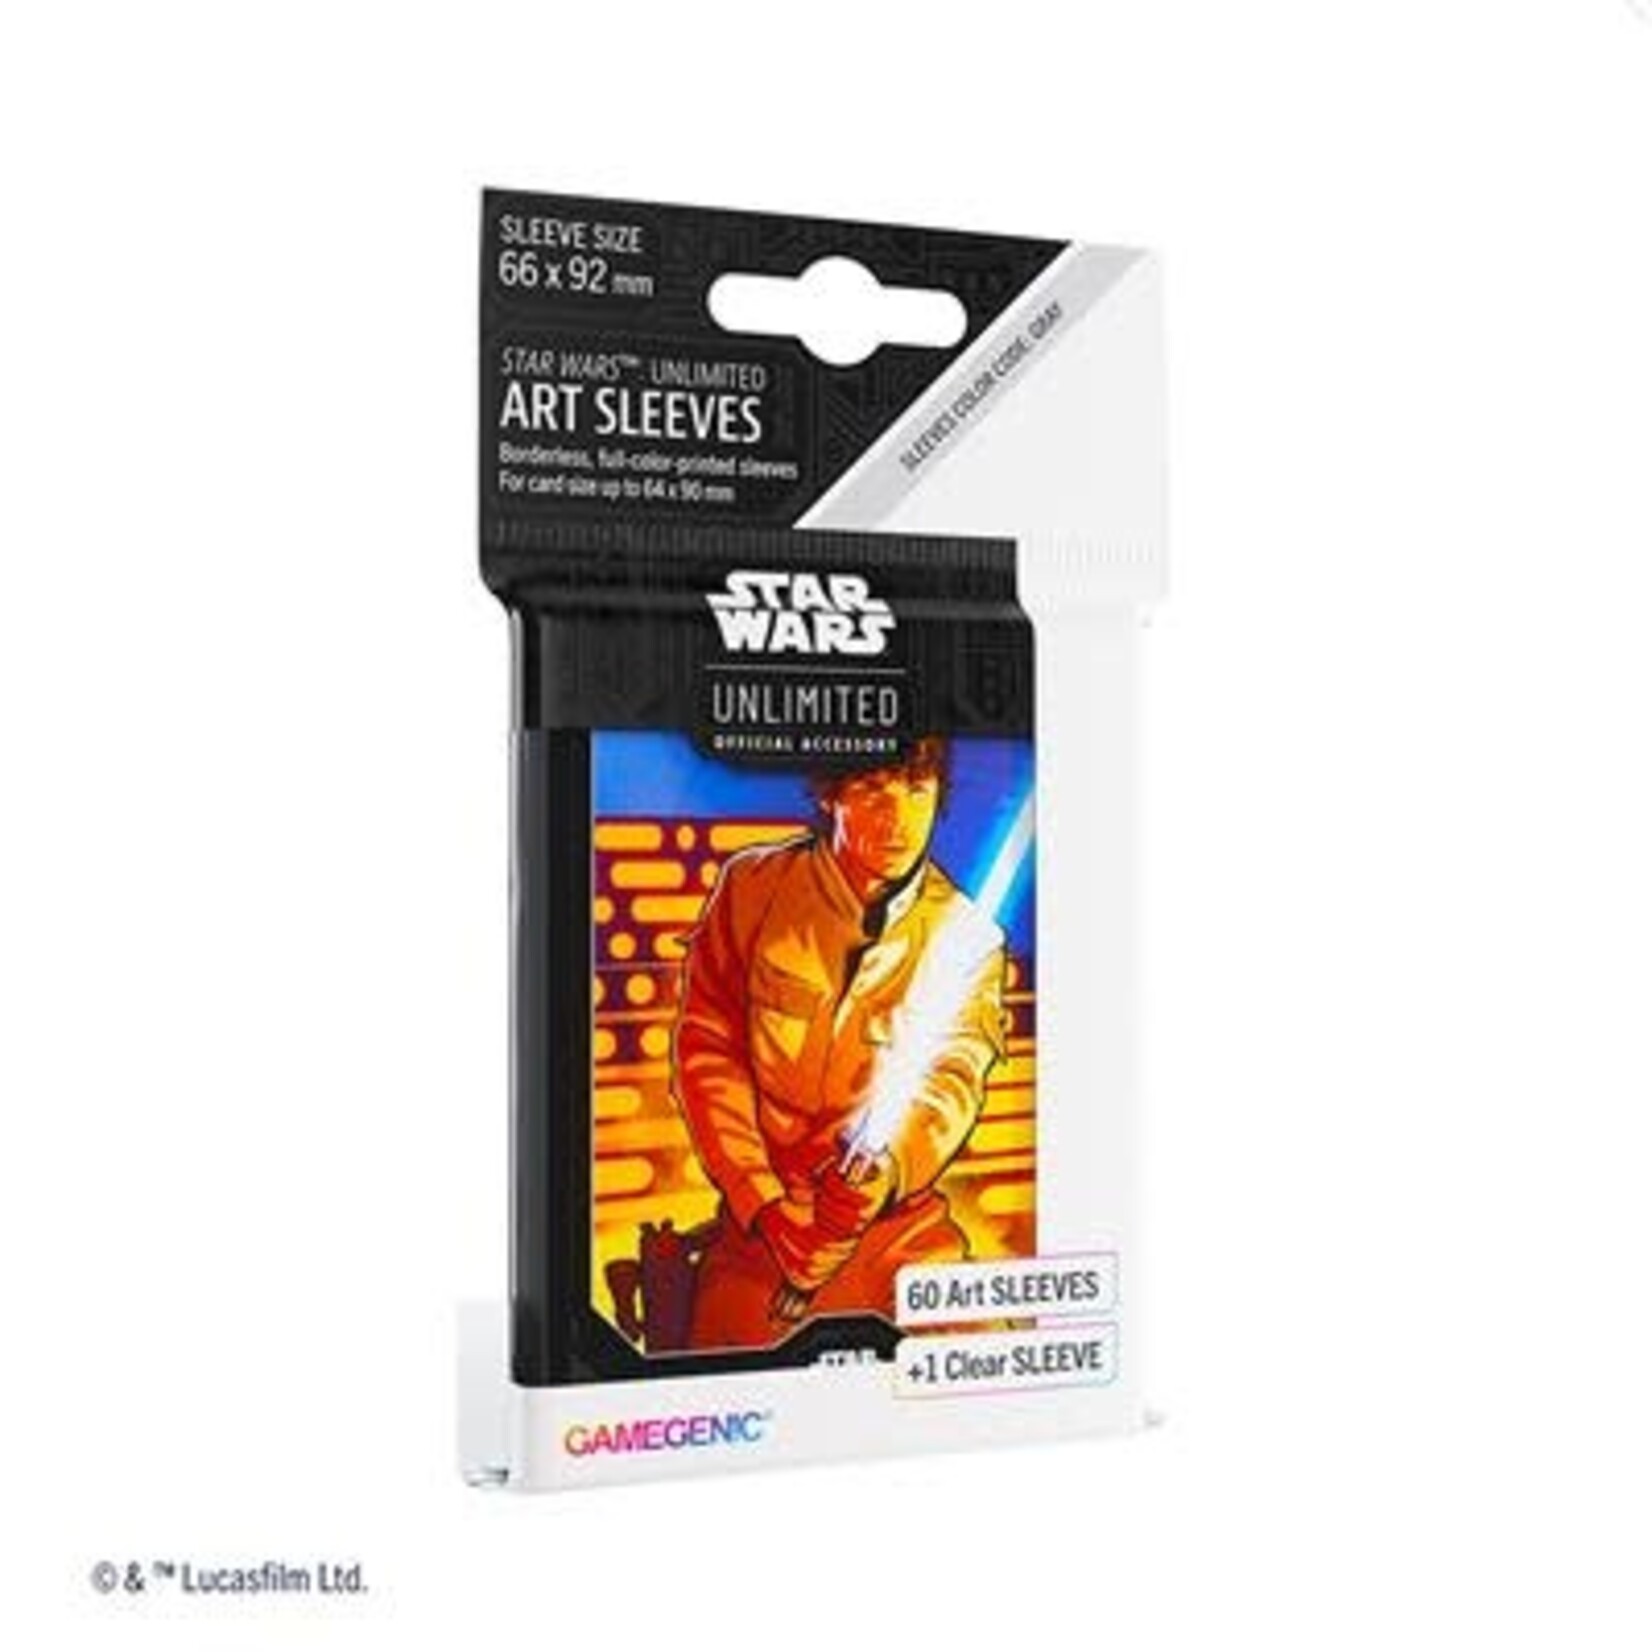 Gamegenic Card Sleeves – Star Wars: Unlimited Art Sleeves (61 Count) Luke Skywalker